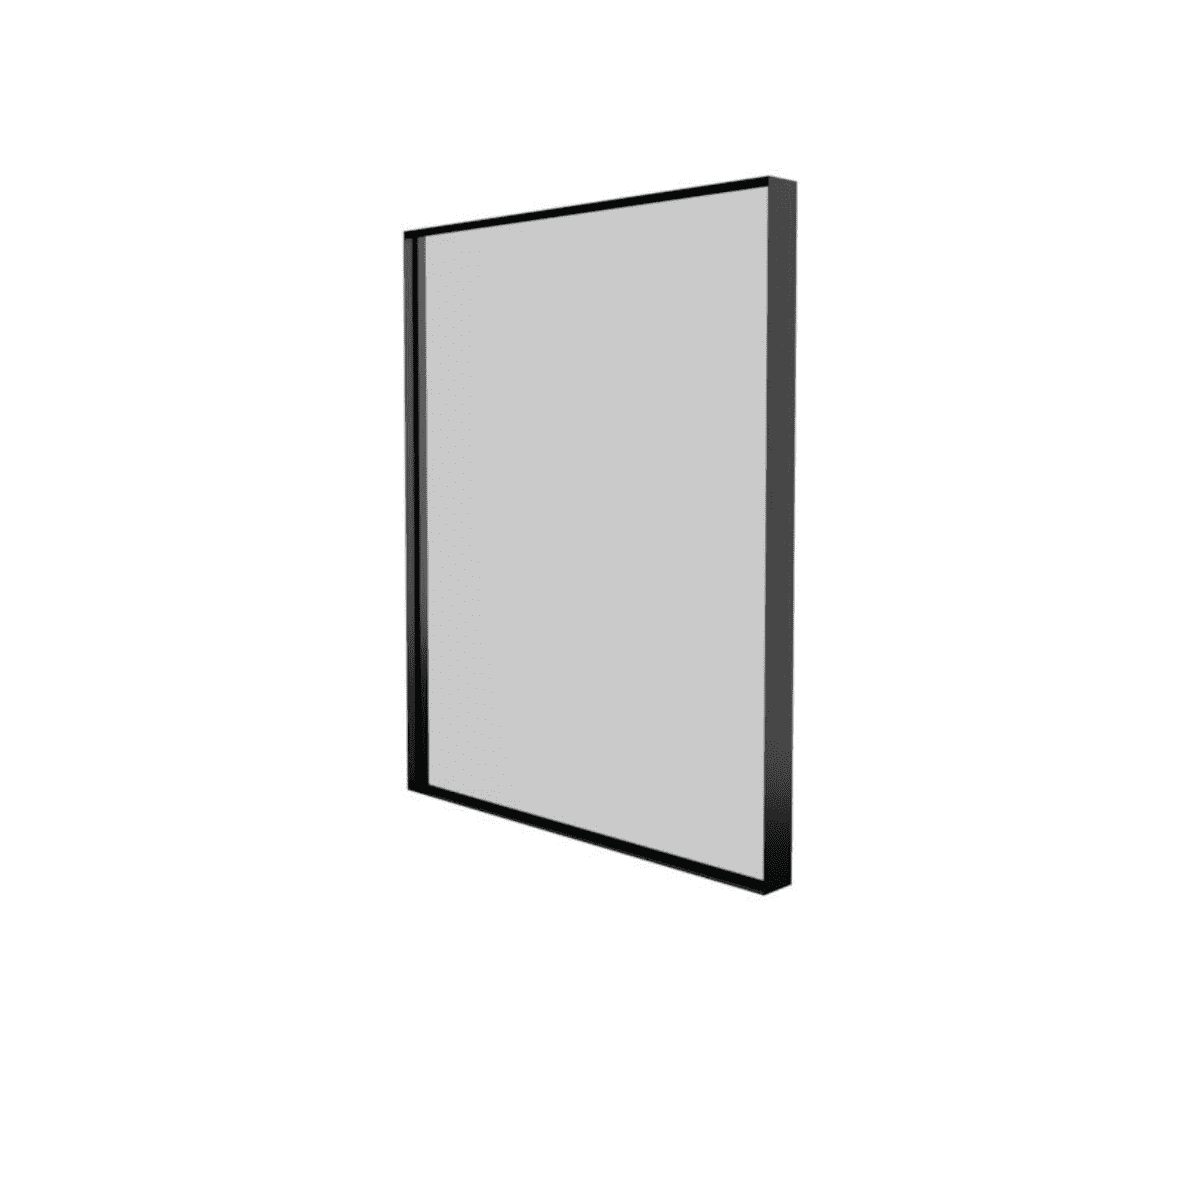 Billede af Sanibell Basicline spejl - 50x60cm - mat sort aluramme